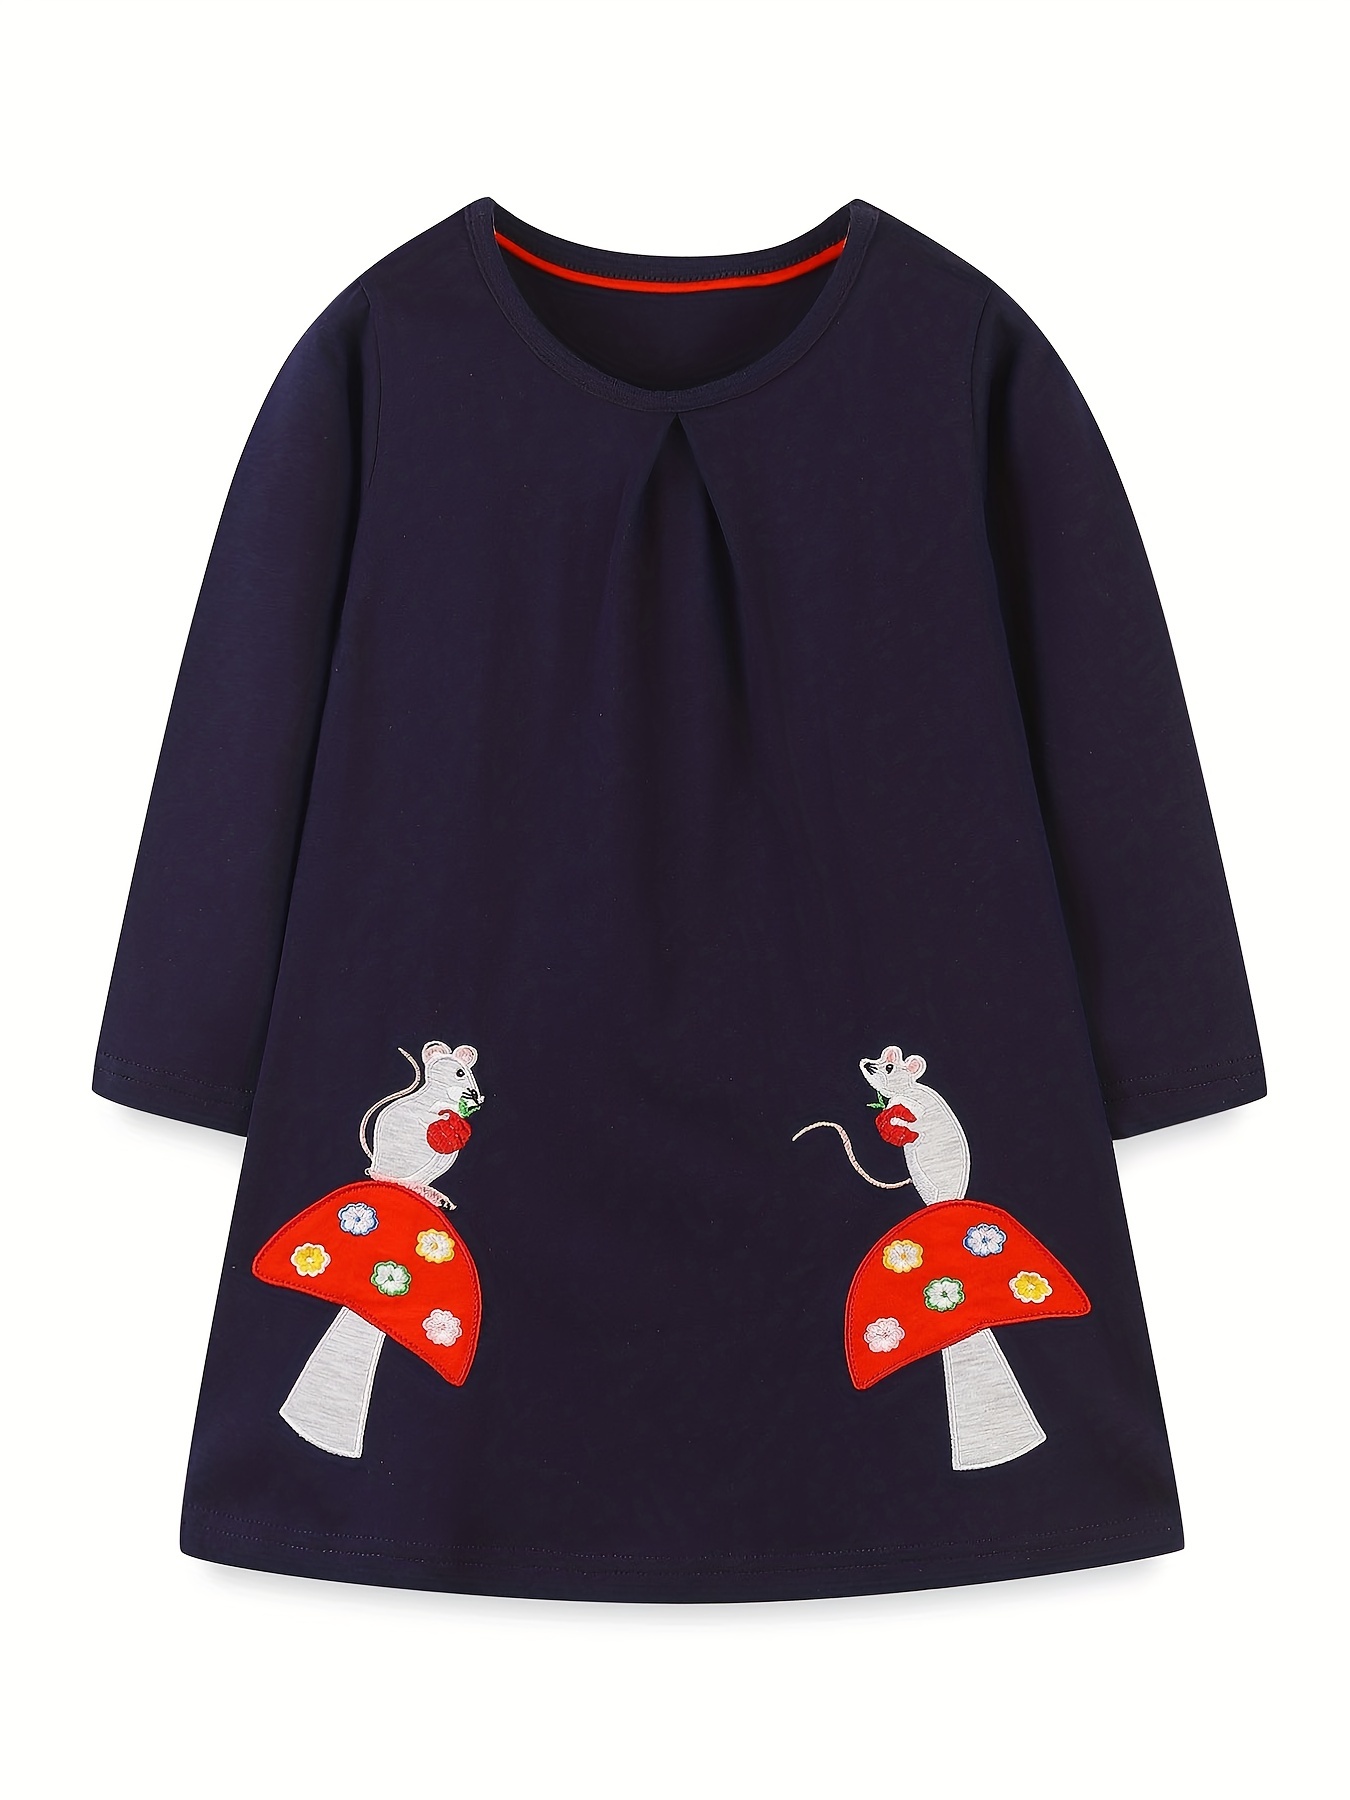 Robe d'été en coton pour petites filles, tenue de princesse Minnie Mouse,  vêtements pour enfants de 1 à 6 ans, nouvelle collection